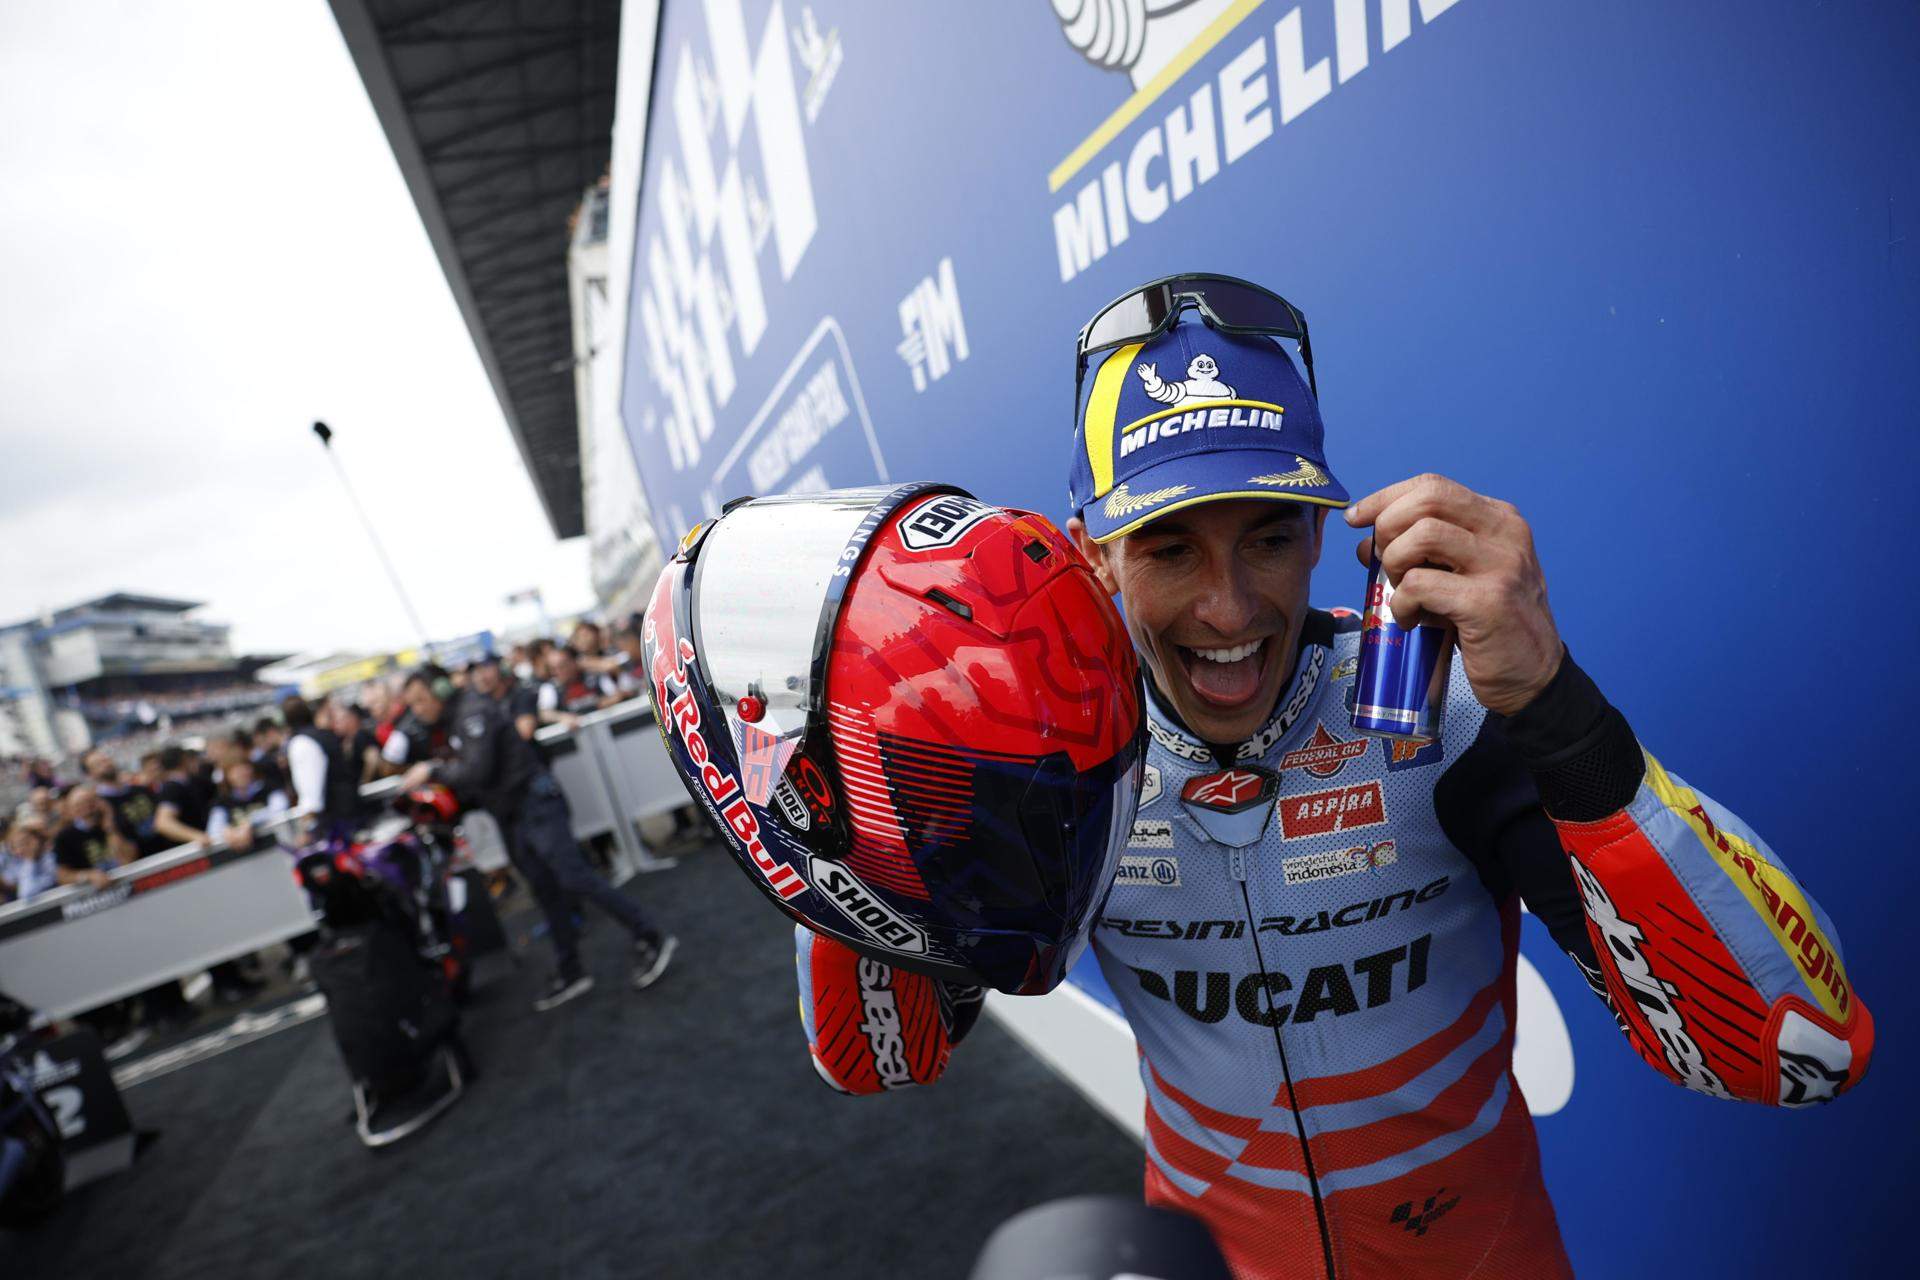 Marc Márquez, contrato millonario, moto oficial y piloto número 1 si traiciona a Ducati